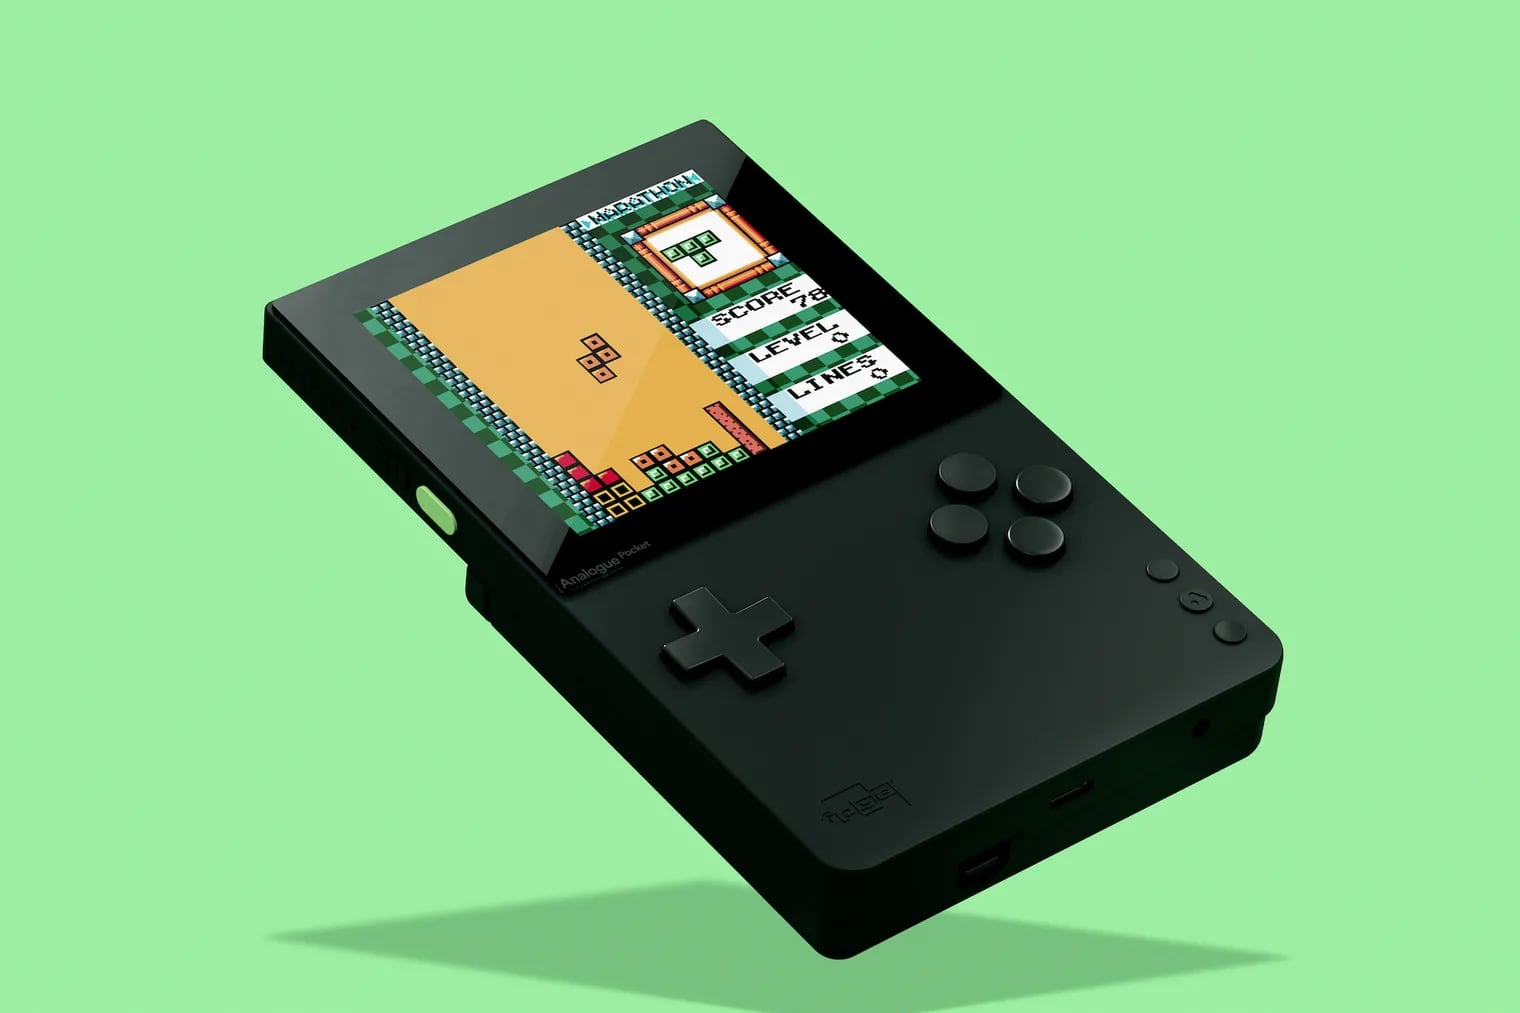 Портативная ретро-консоль Analogue Pocket с поддержкой старых картриджей Sega и Game Boy поступит в продажу в декабре